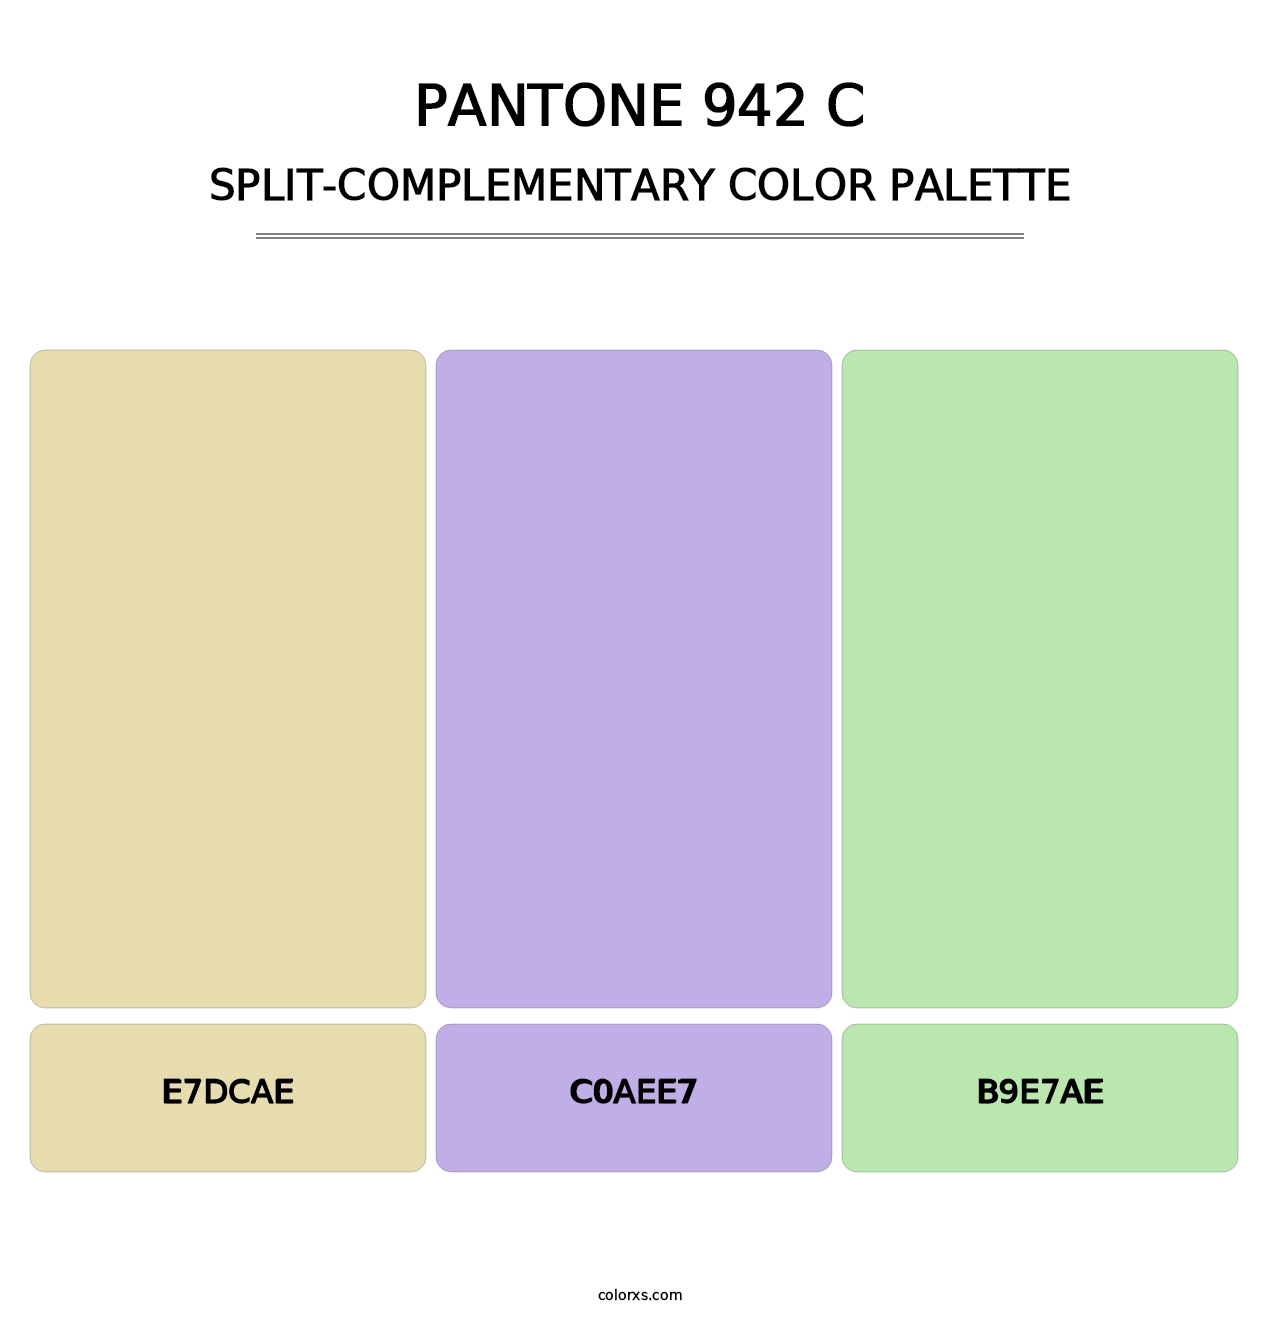 PANTONE 942 C - Split-Complementary Color Palette